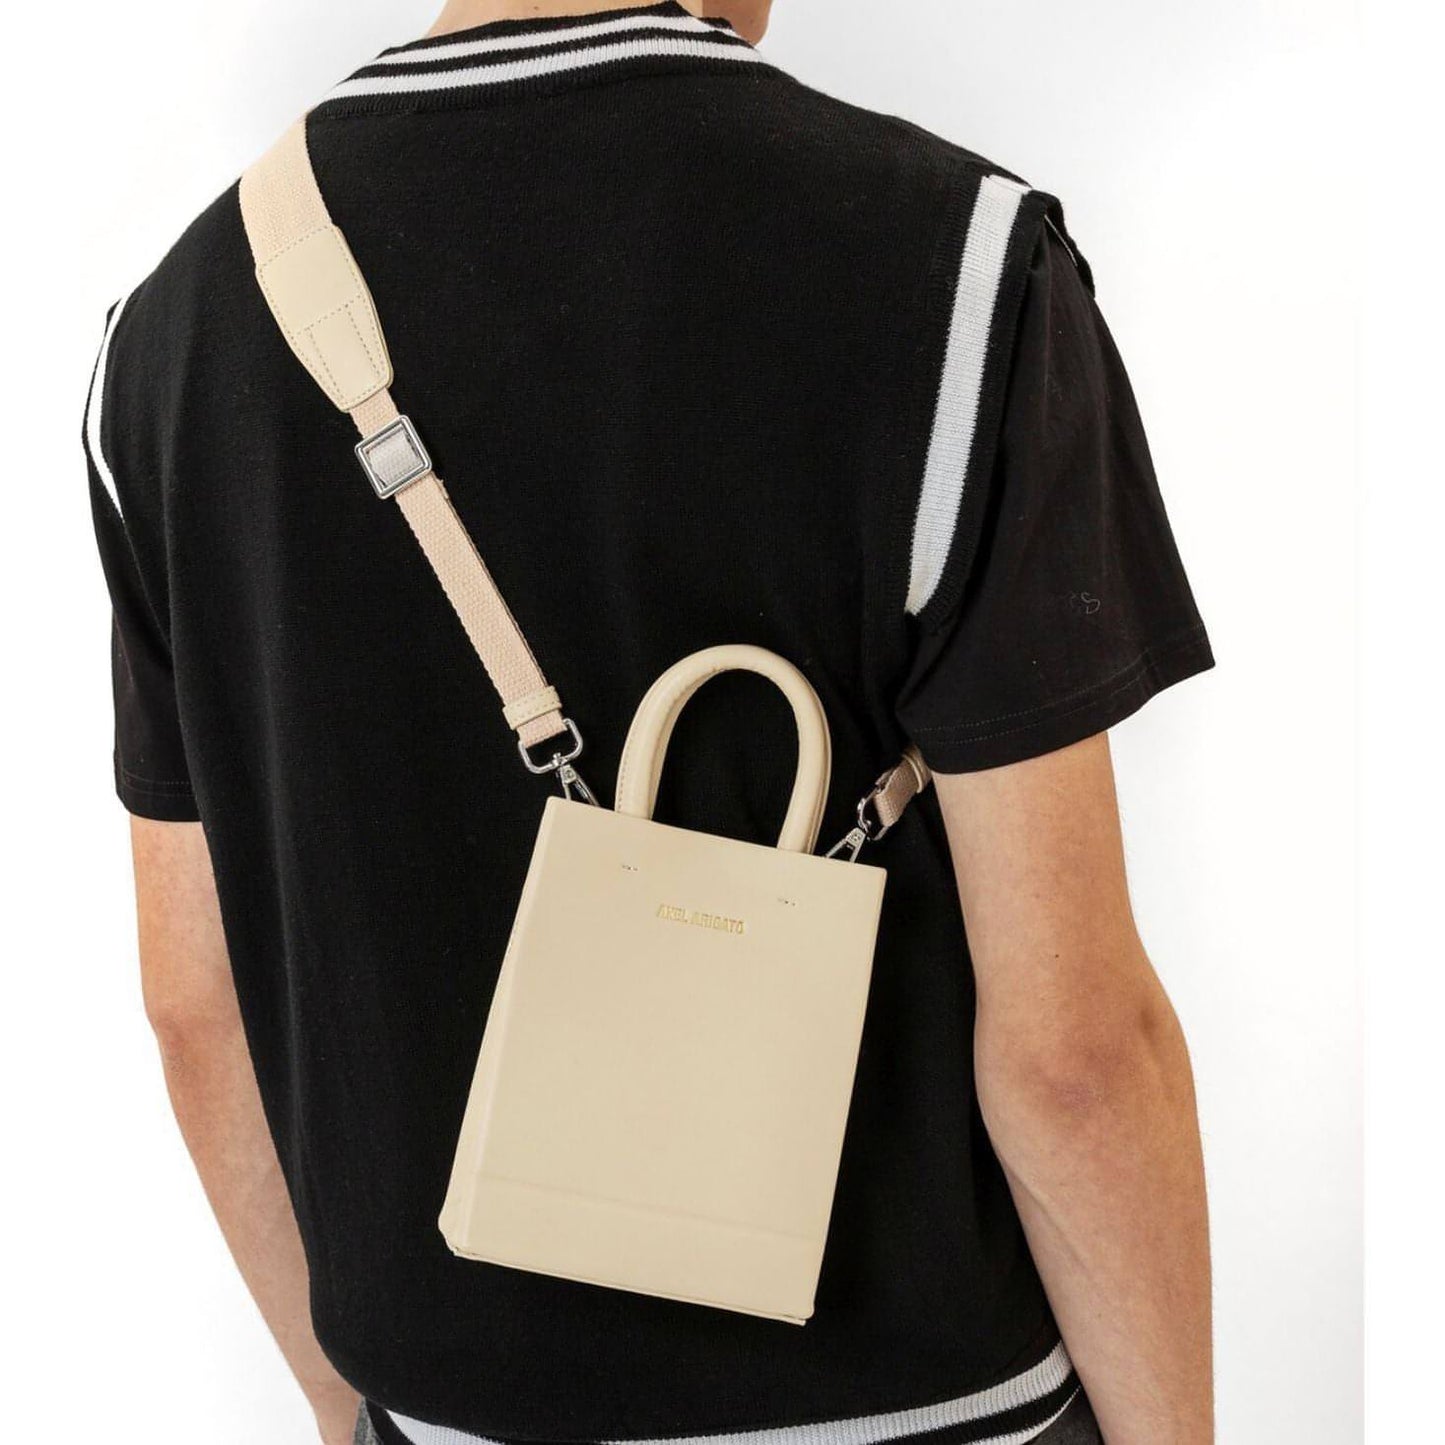 AXEL ARIGATO vyriškas/moteriškas šviesus krepšys Mini shopping bag